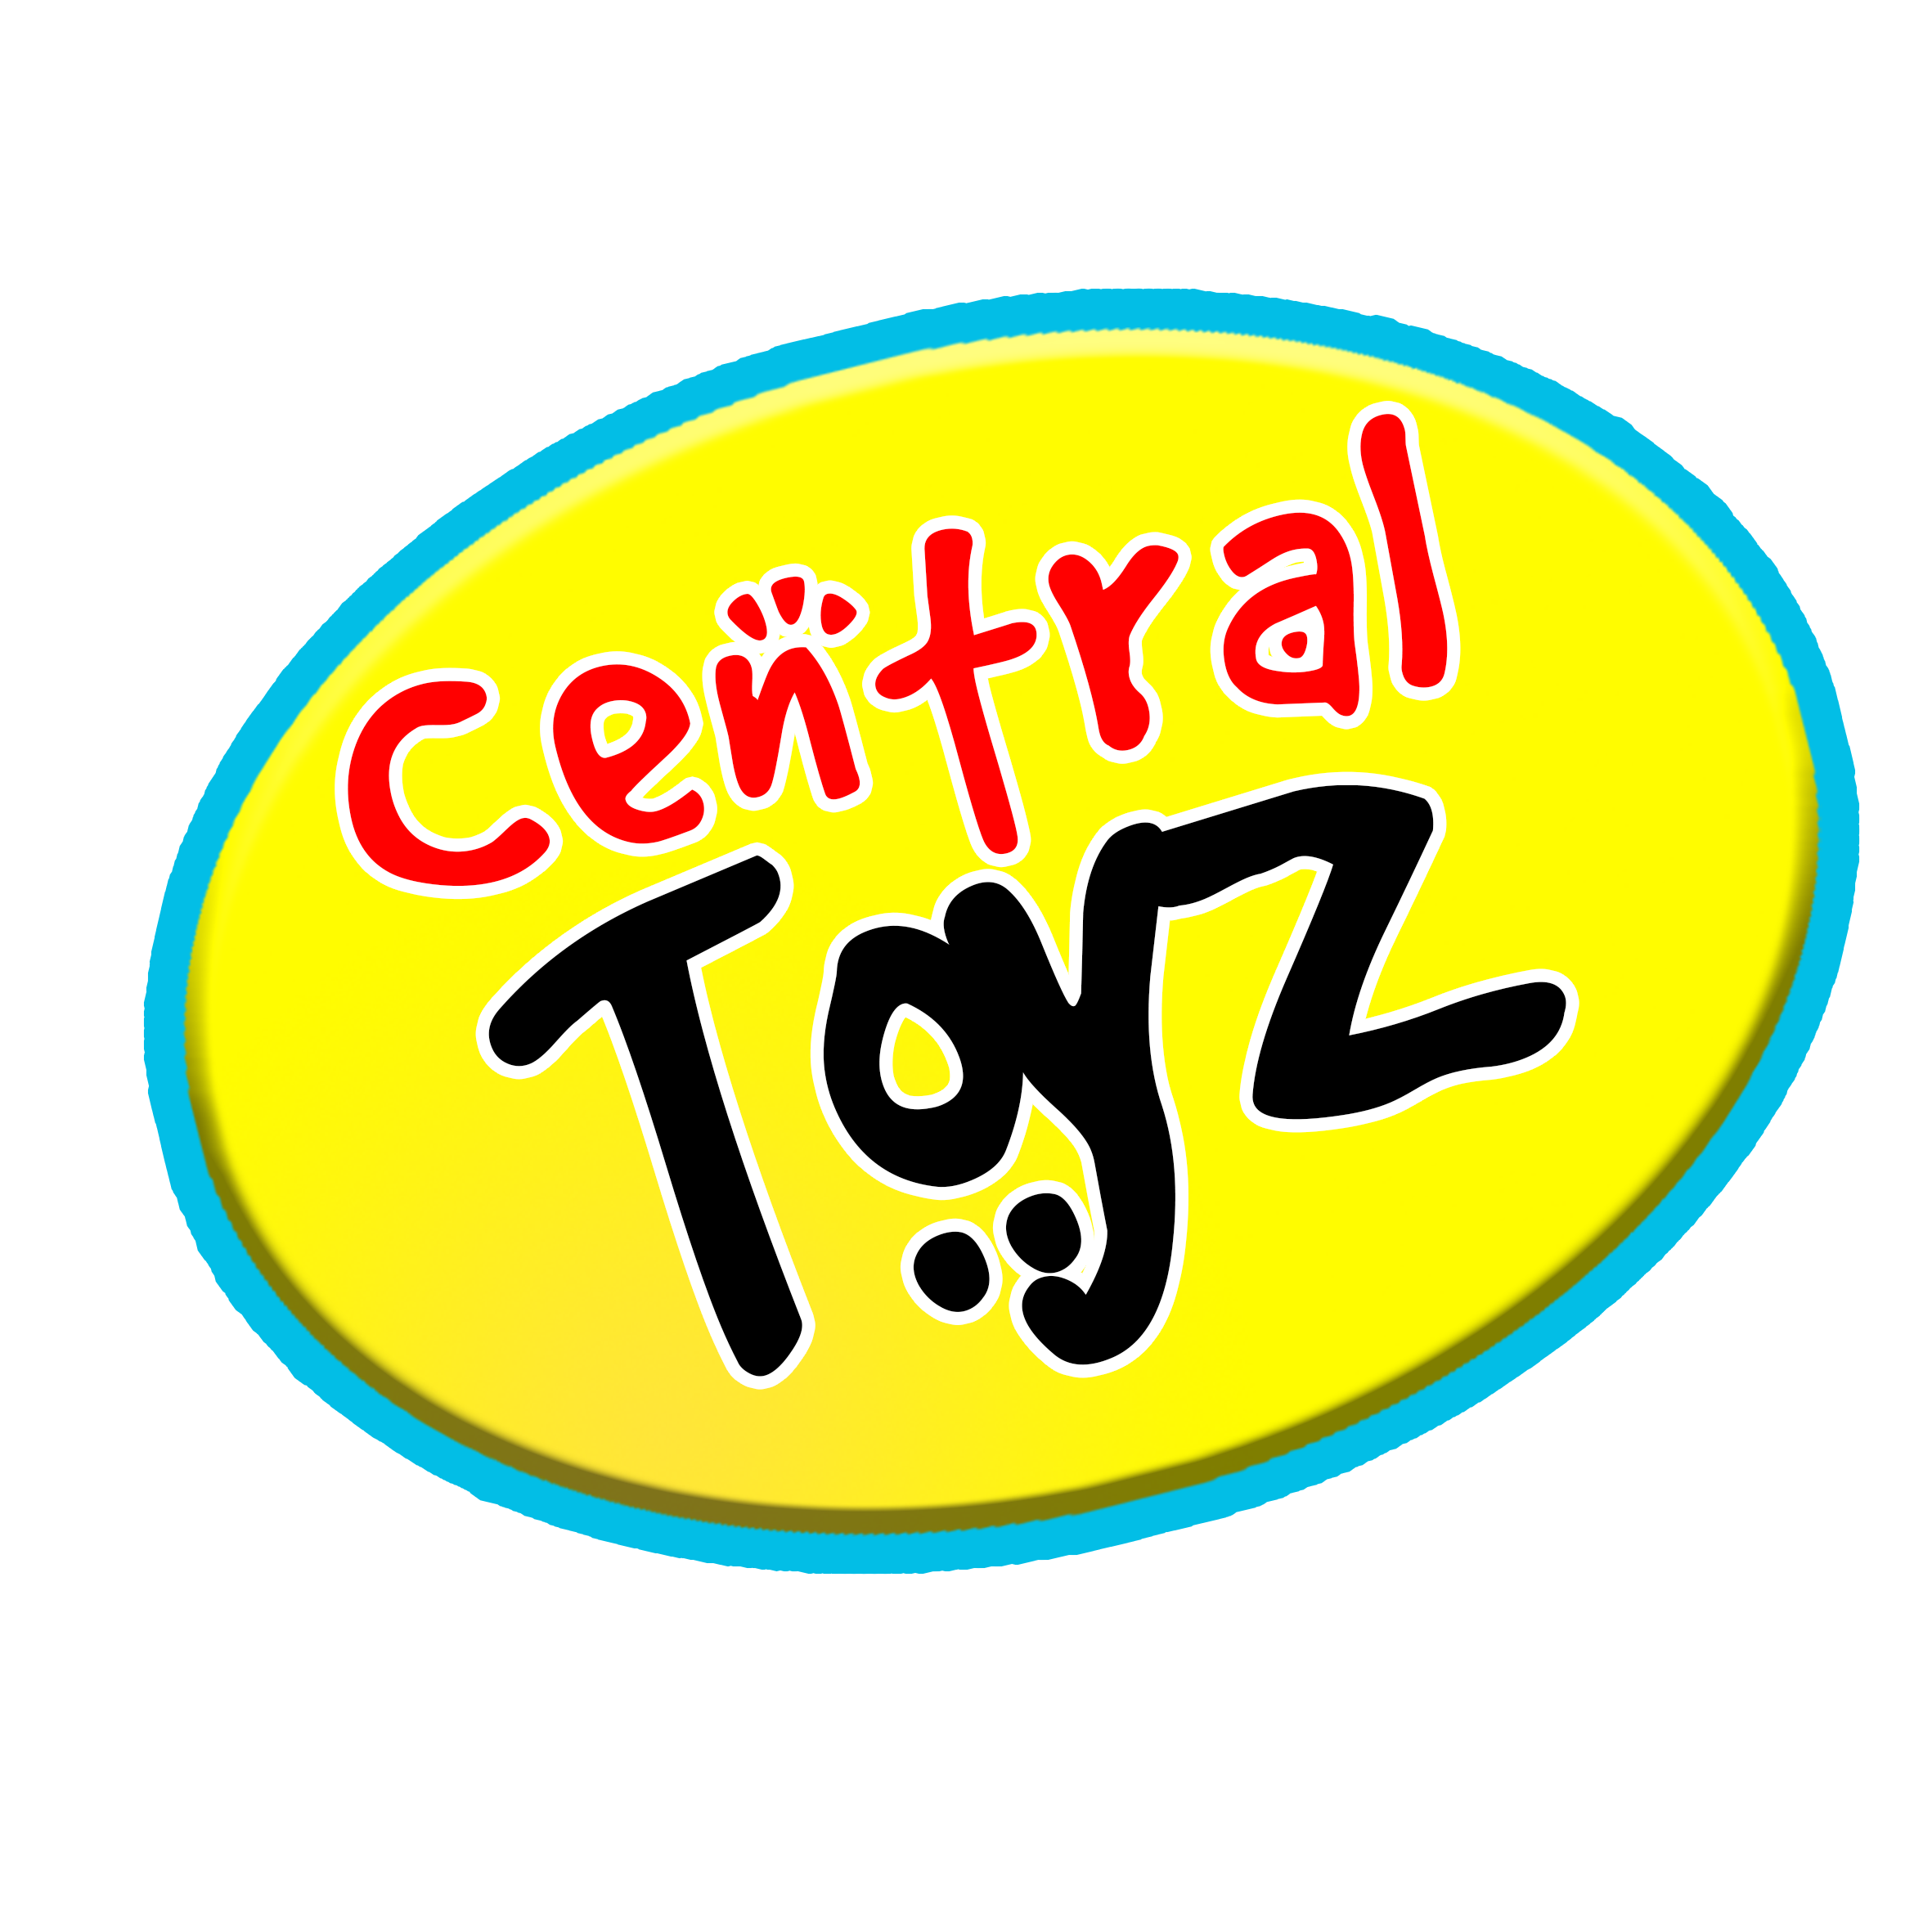 Central Toyz Adeje